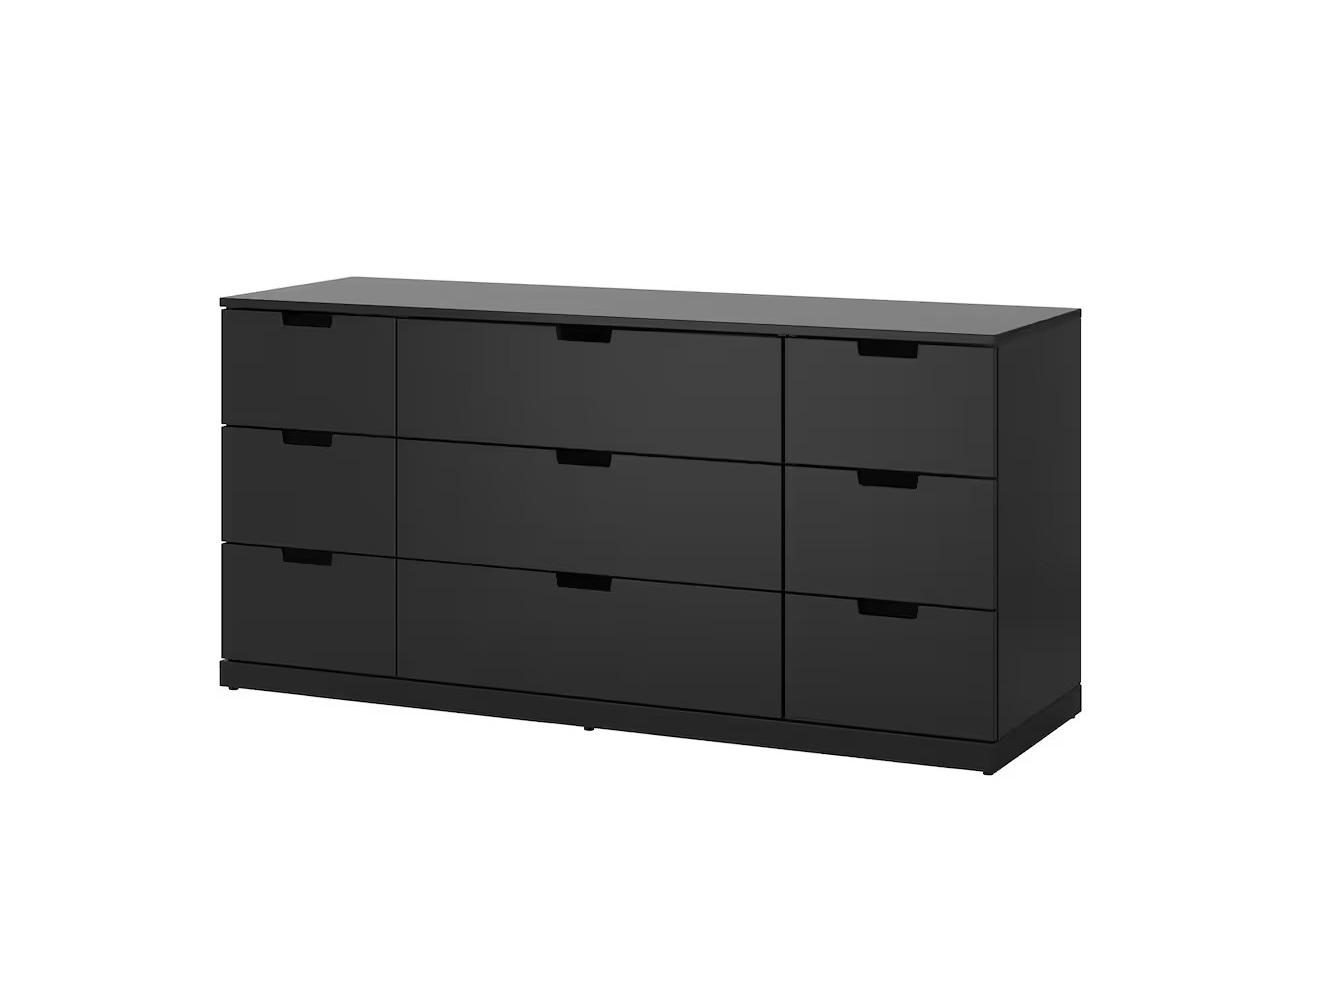 Комод Нордли 25 black ИКЕА (IKEA) изображение товара